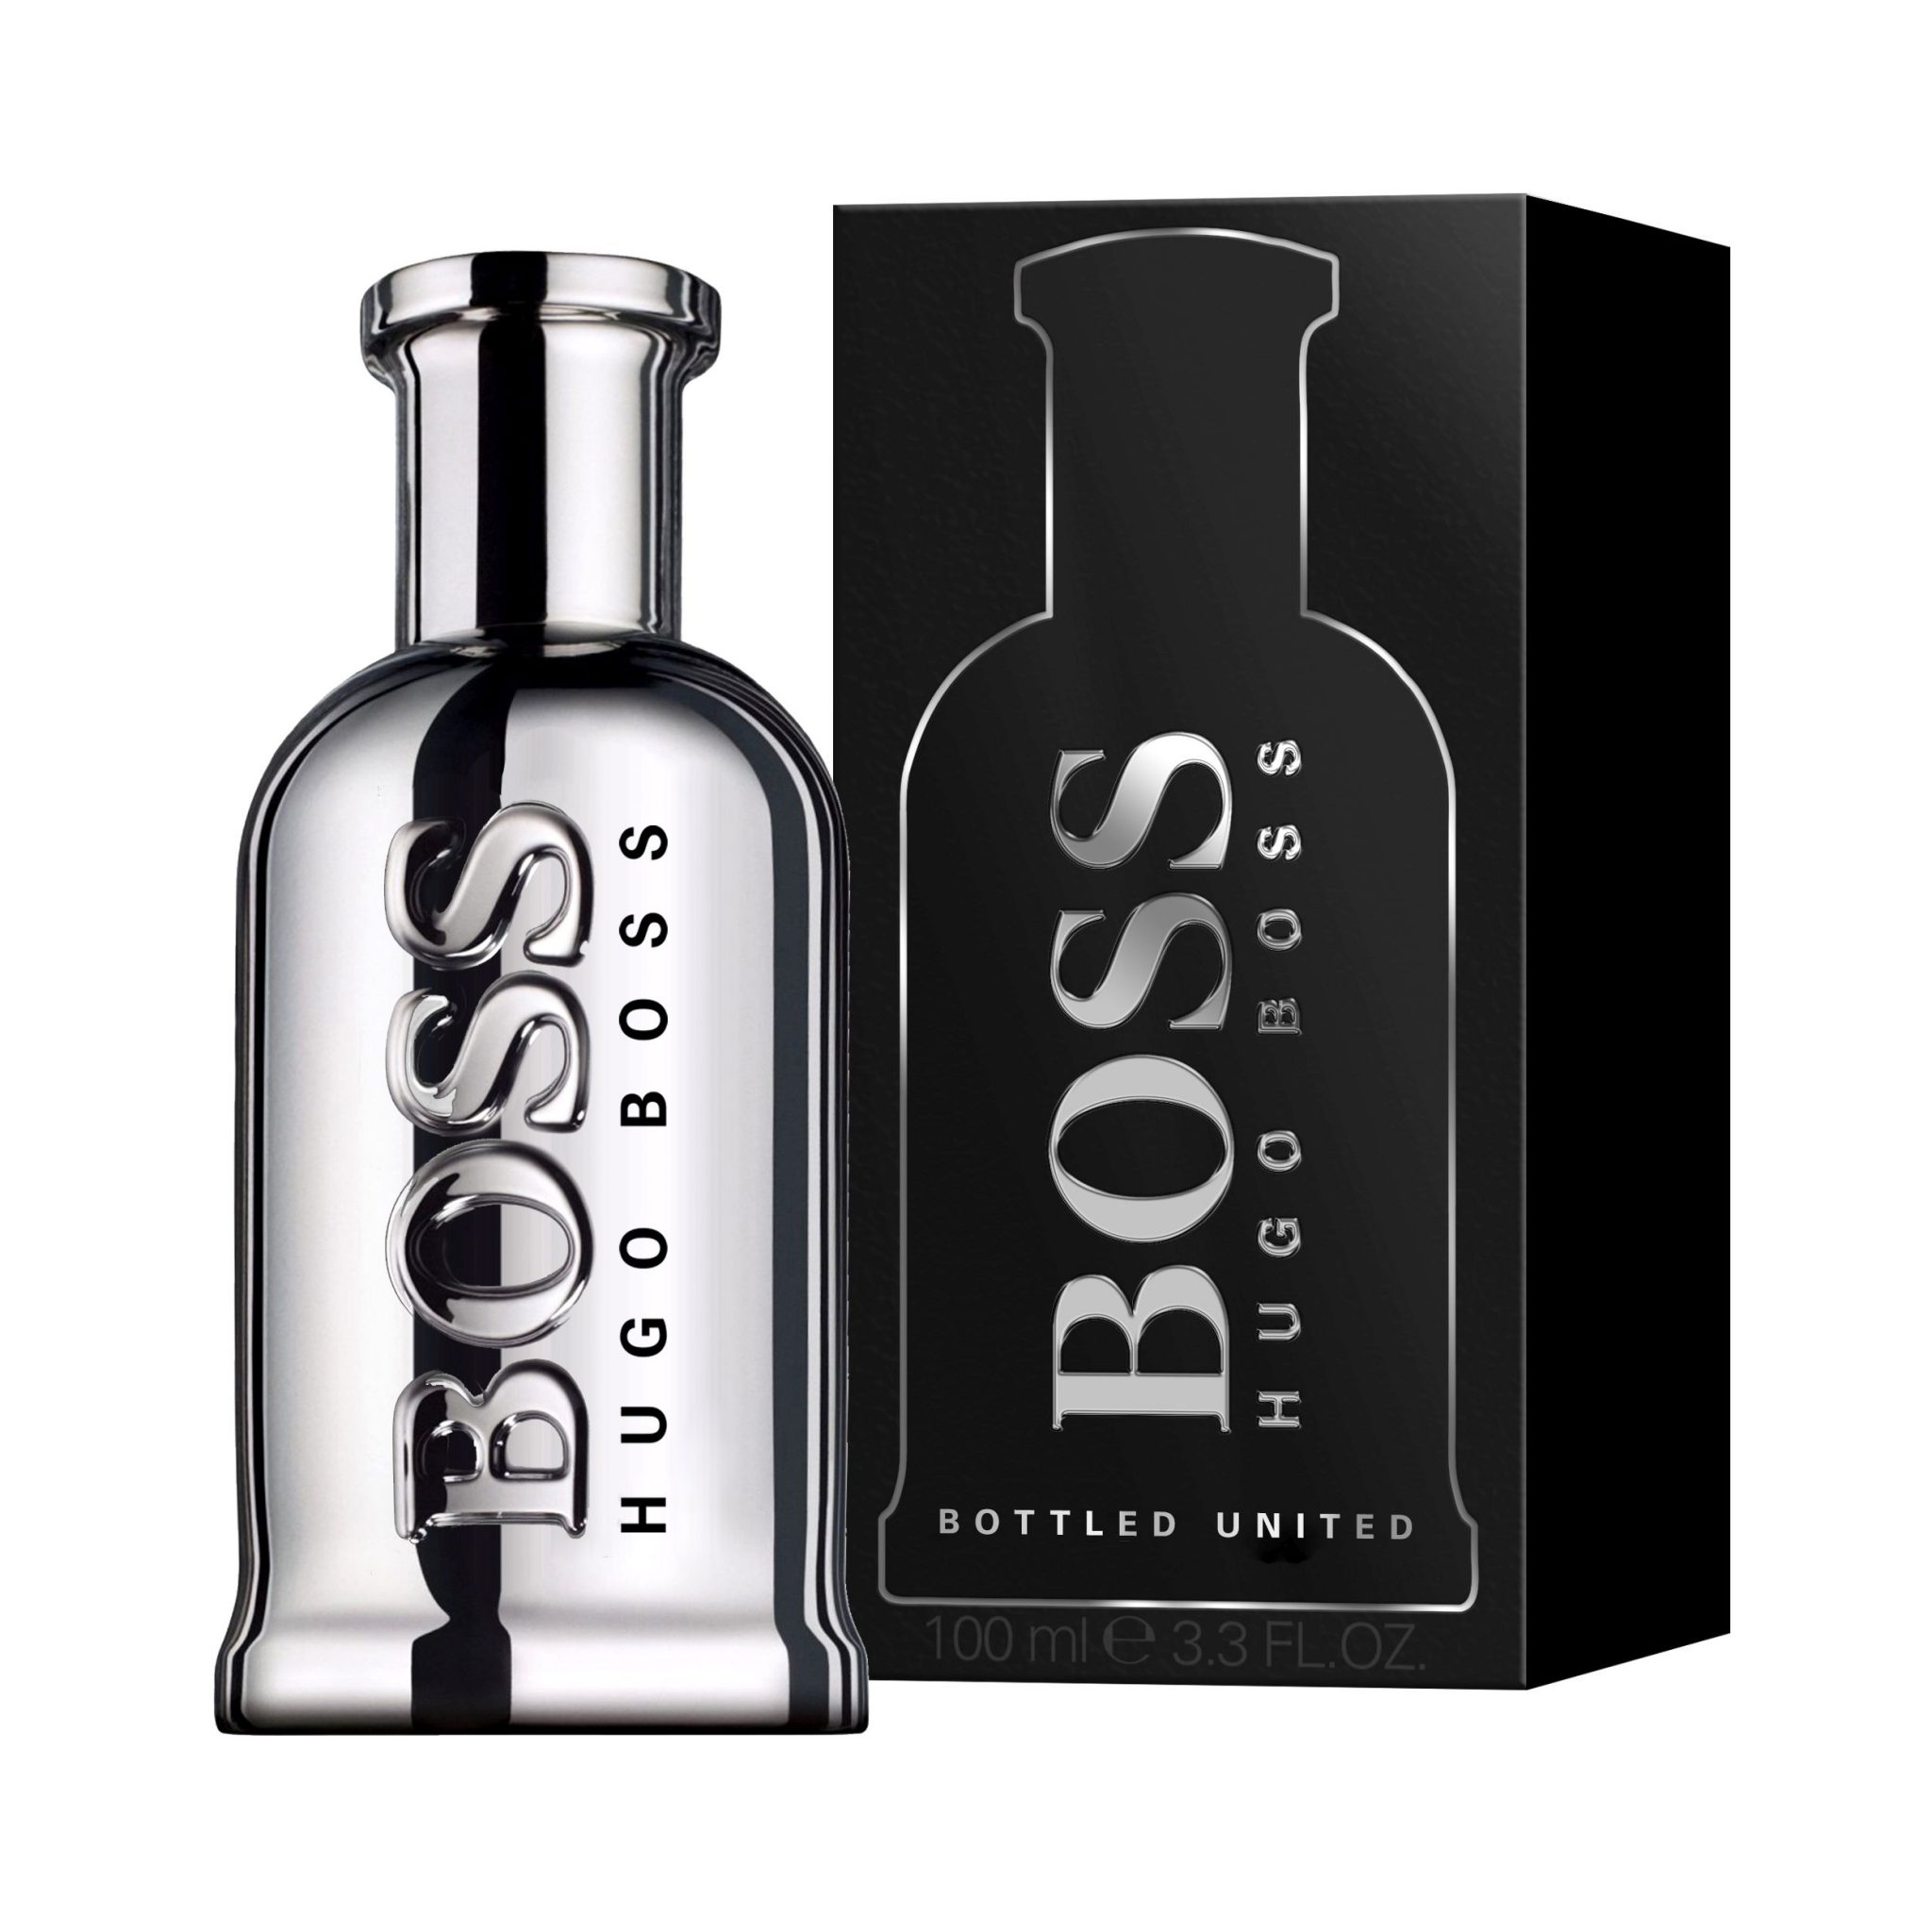 Хуго мужские. Hugo Boss Boss Bottled United, 100 ml. Туалетная вода Hugo Boss Bottled United le, 100 мл. Hugo Boss Boss Bottled (m) EDT 100ml. Boss Bottled United men 100ml EDT New.